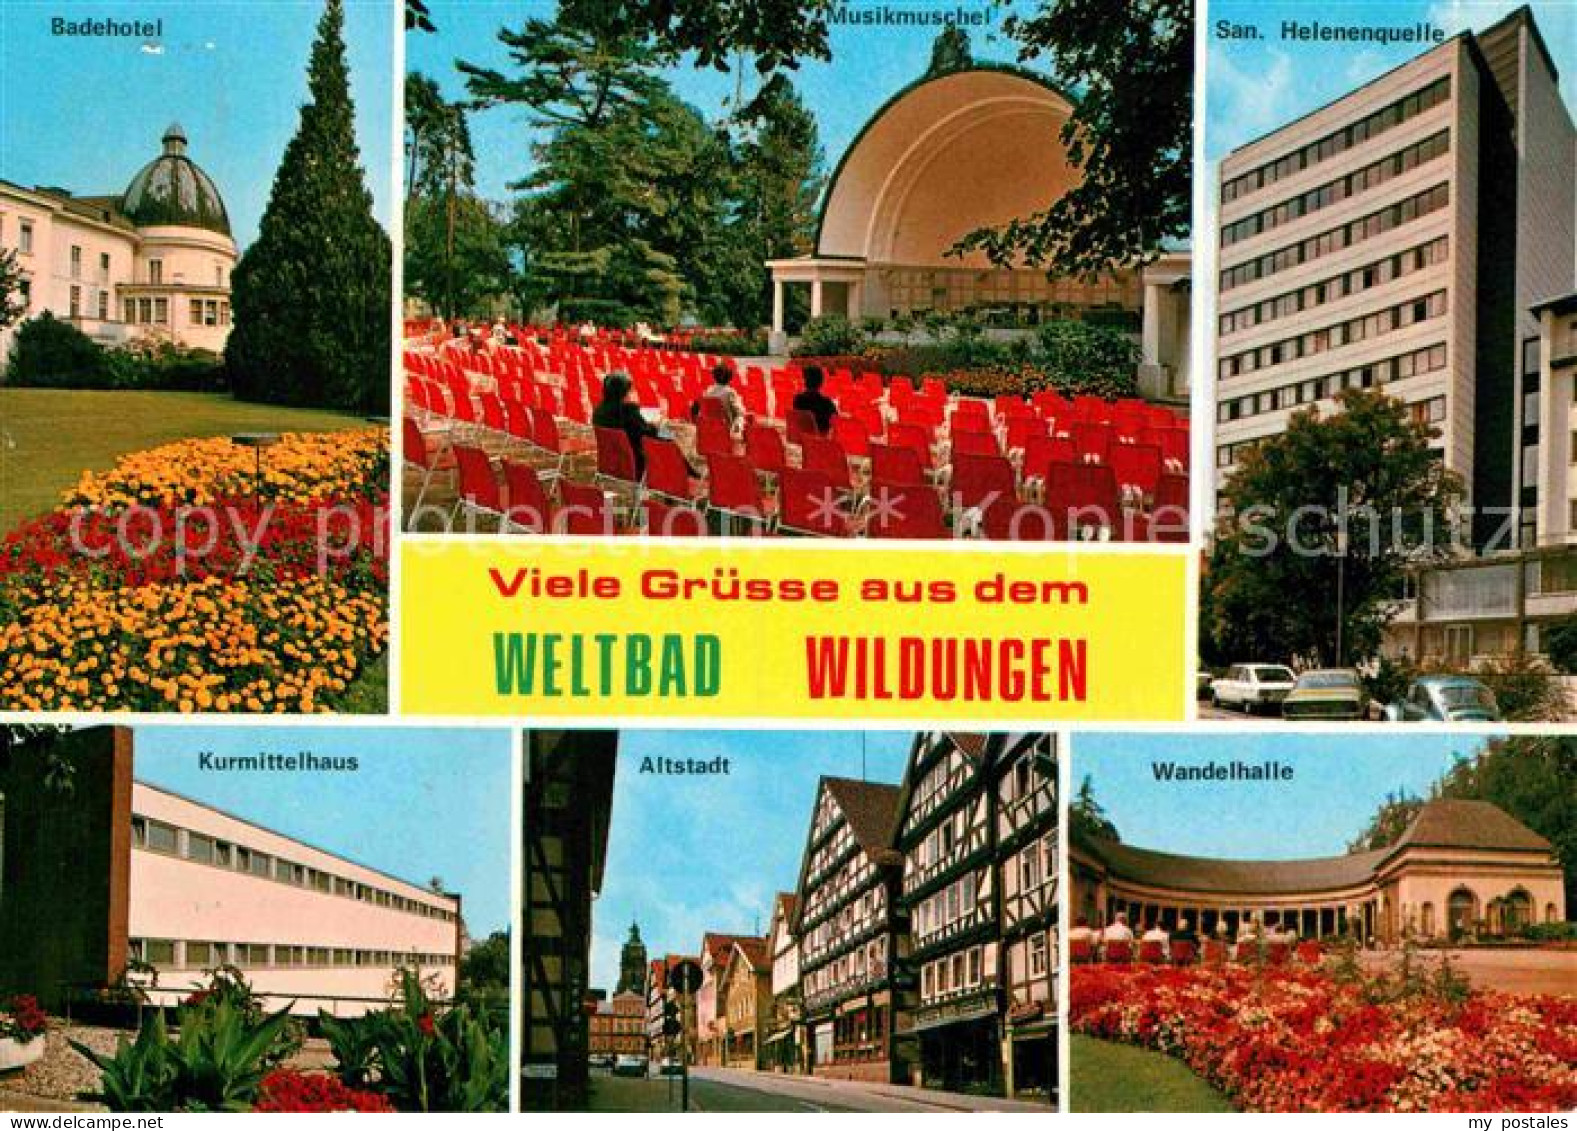 72869680 Bad Wildungen Konzertplatz San. Helenenquelle Badehotel Wandelhalle Alb - Bad Wildungen